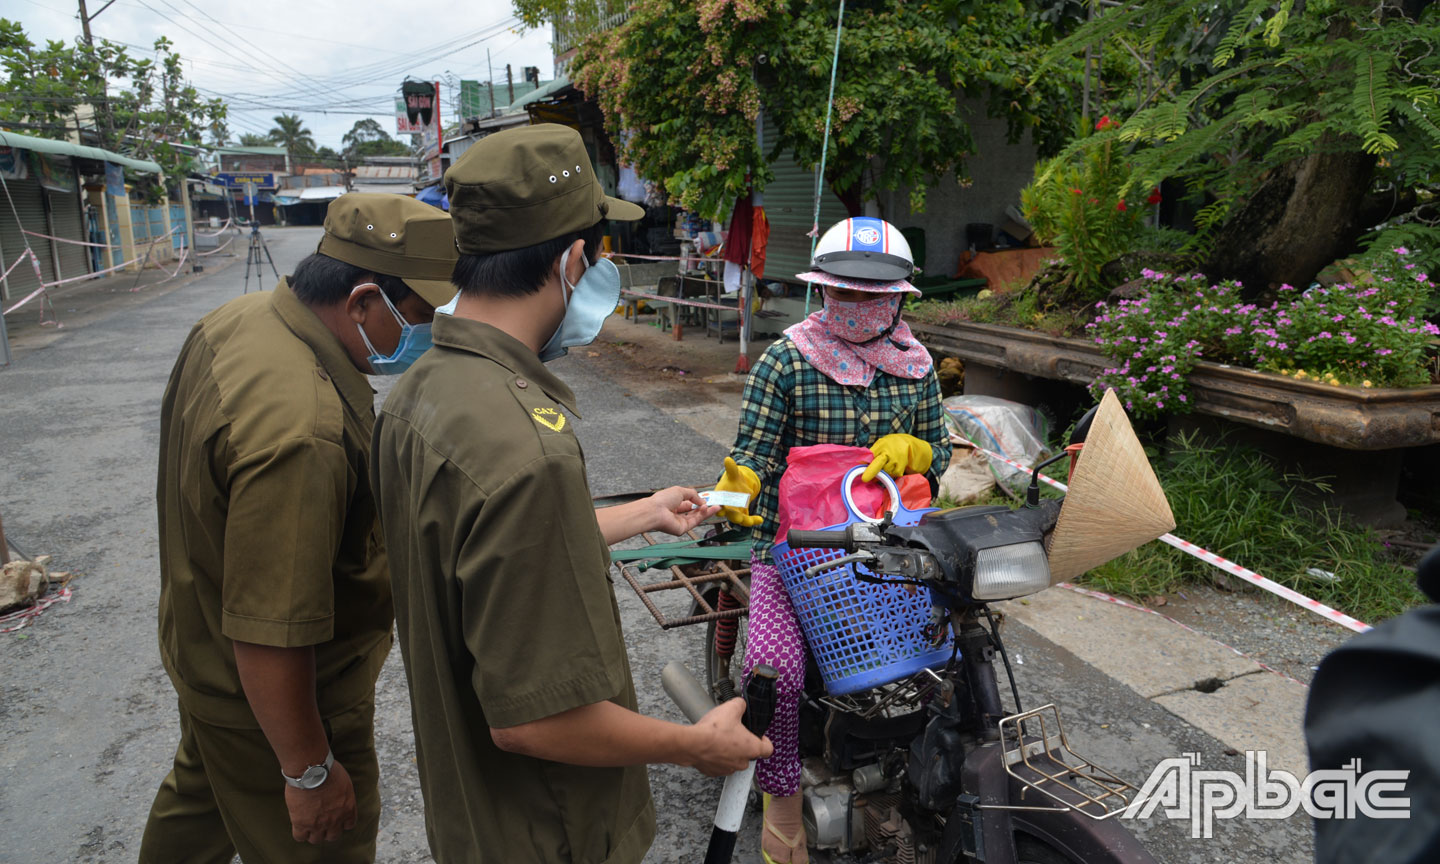 : Lực lượng làm nhiệm vụ tại chốt kiểm soát Ngã 3 Xoài Hột (xã Thạnh Phú, huyện Châu Thành) nhắc nhở người dân buôn bán phải đảm bảo an toàn phòng, chống dịch bệnh.